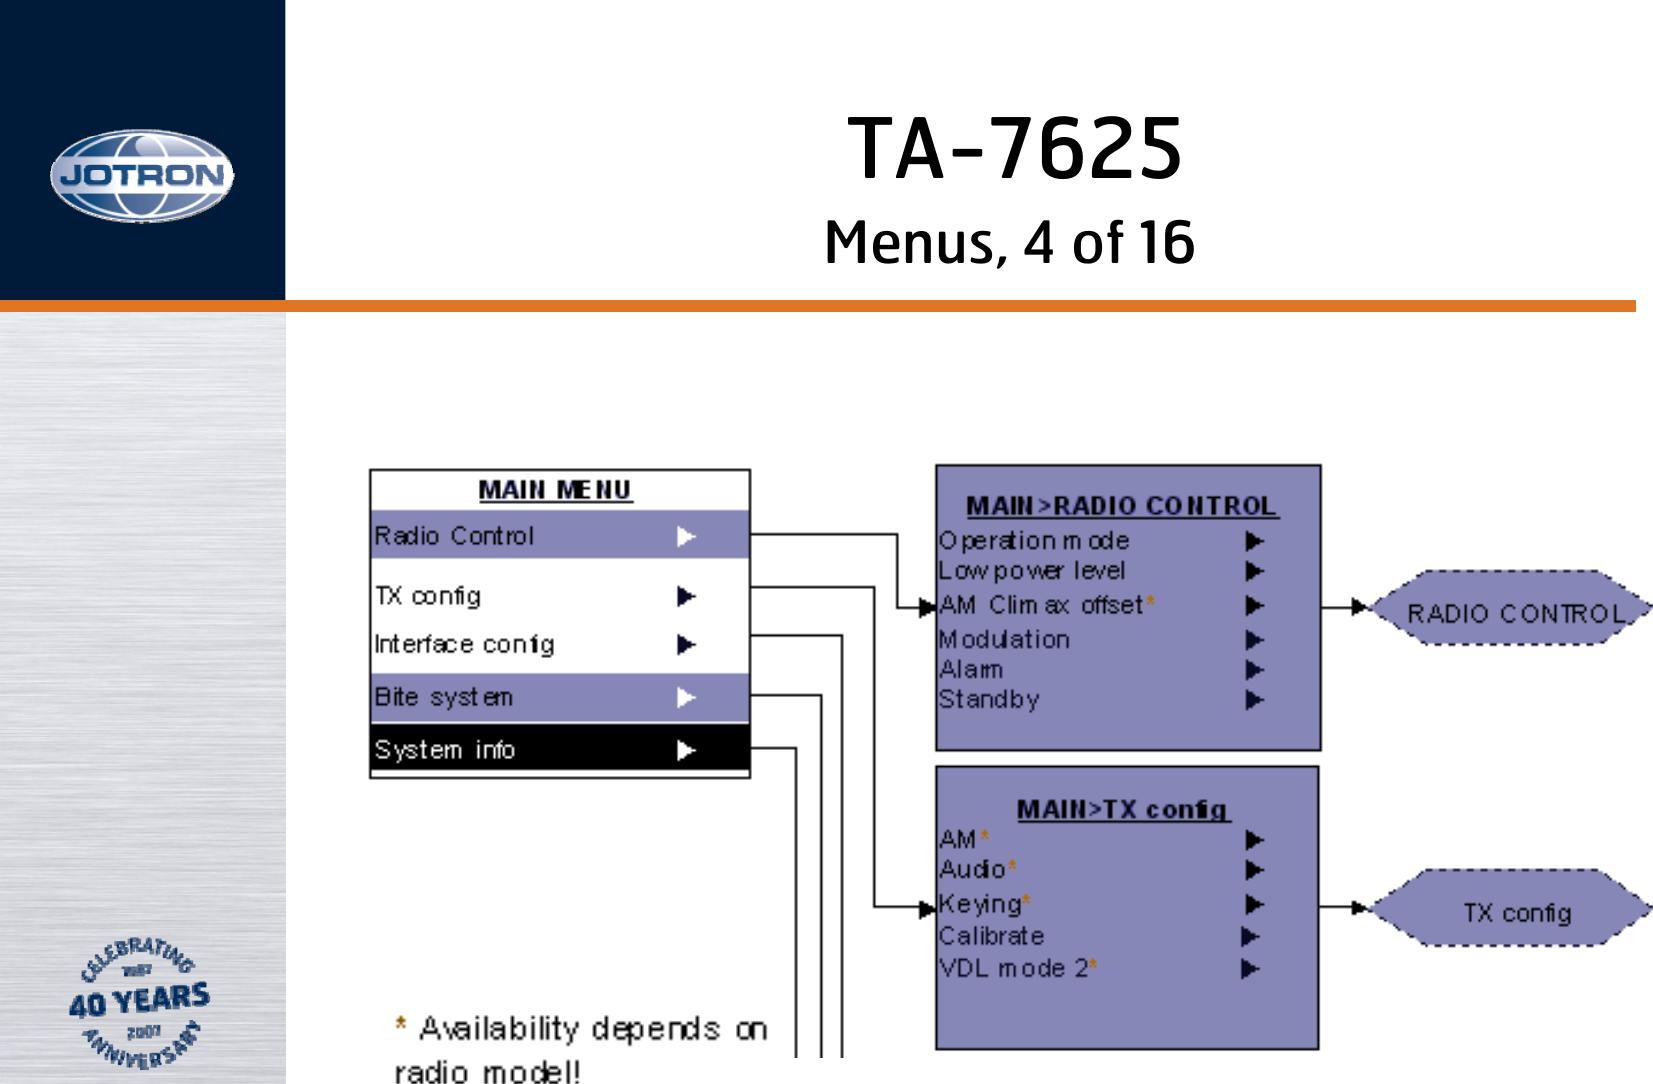 Menus, 4 of 16TA-7625